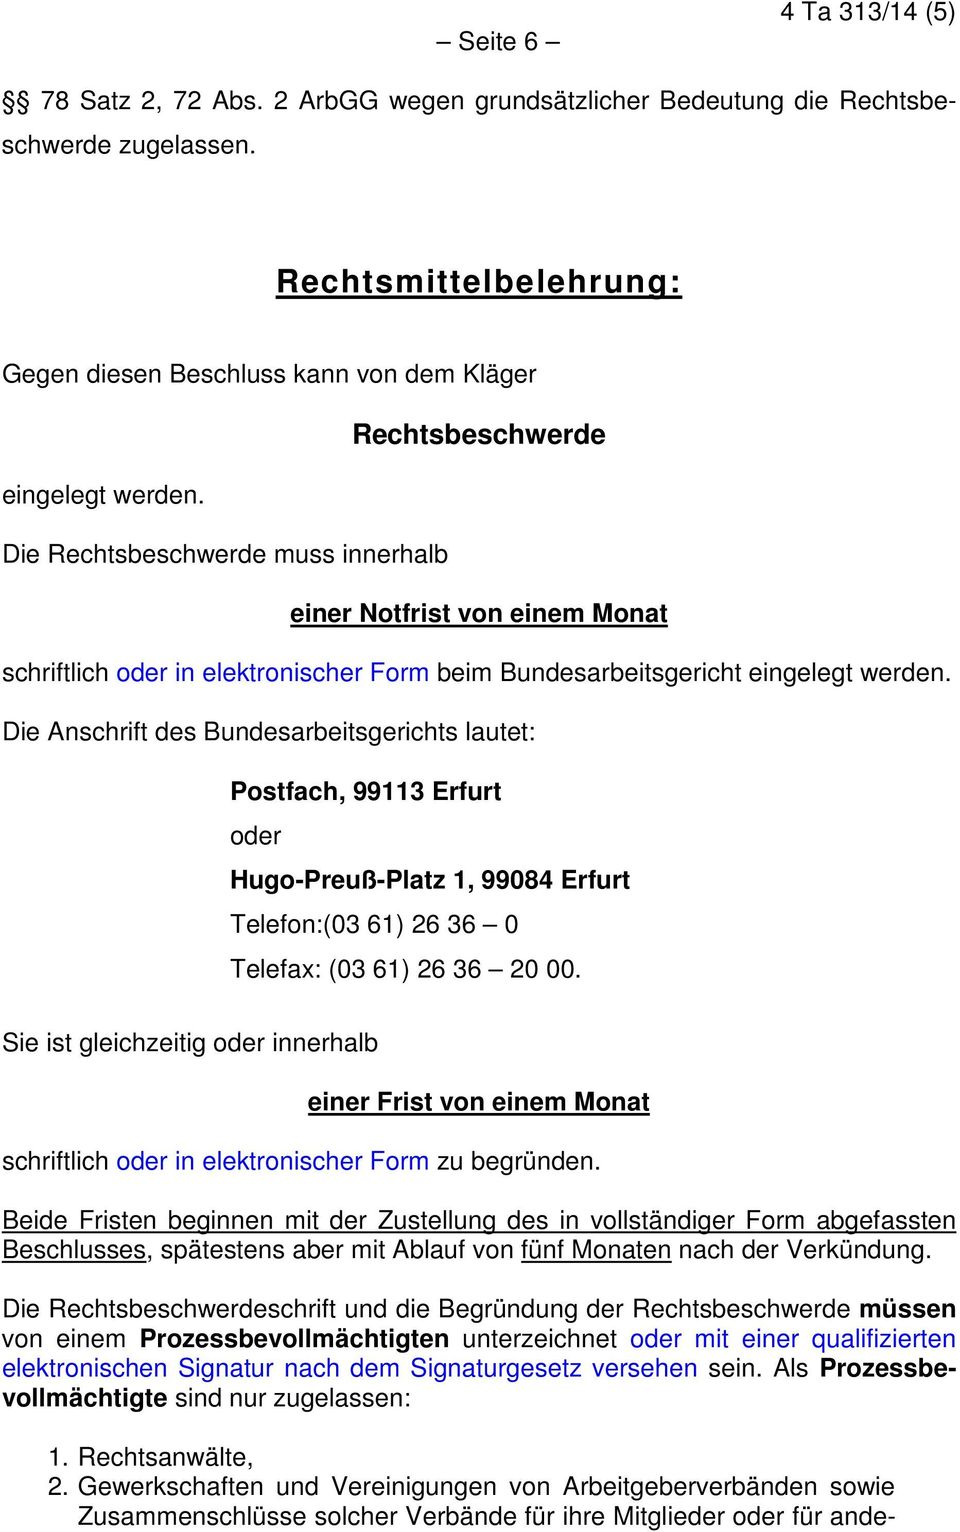 Die Anschrift des Bundesarbeitsgerichts lautet: Postfach, 99113 Erfurt oder Hugo-Preuß-Platz 1, 99084 Erfurt Telefon:(03 61) 26 36 0 Telefax: (03 61) 26 36 20 00.